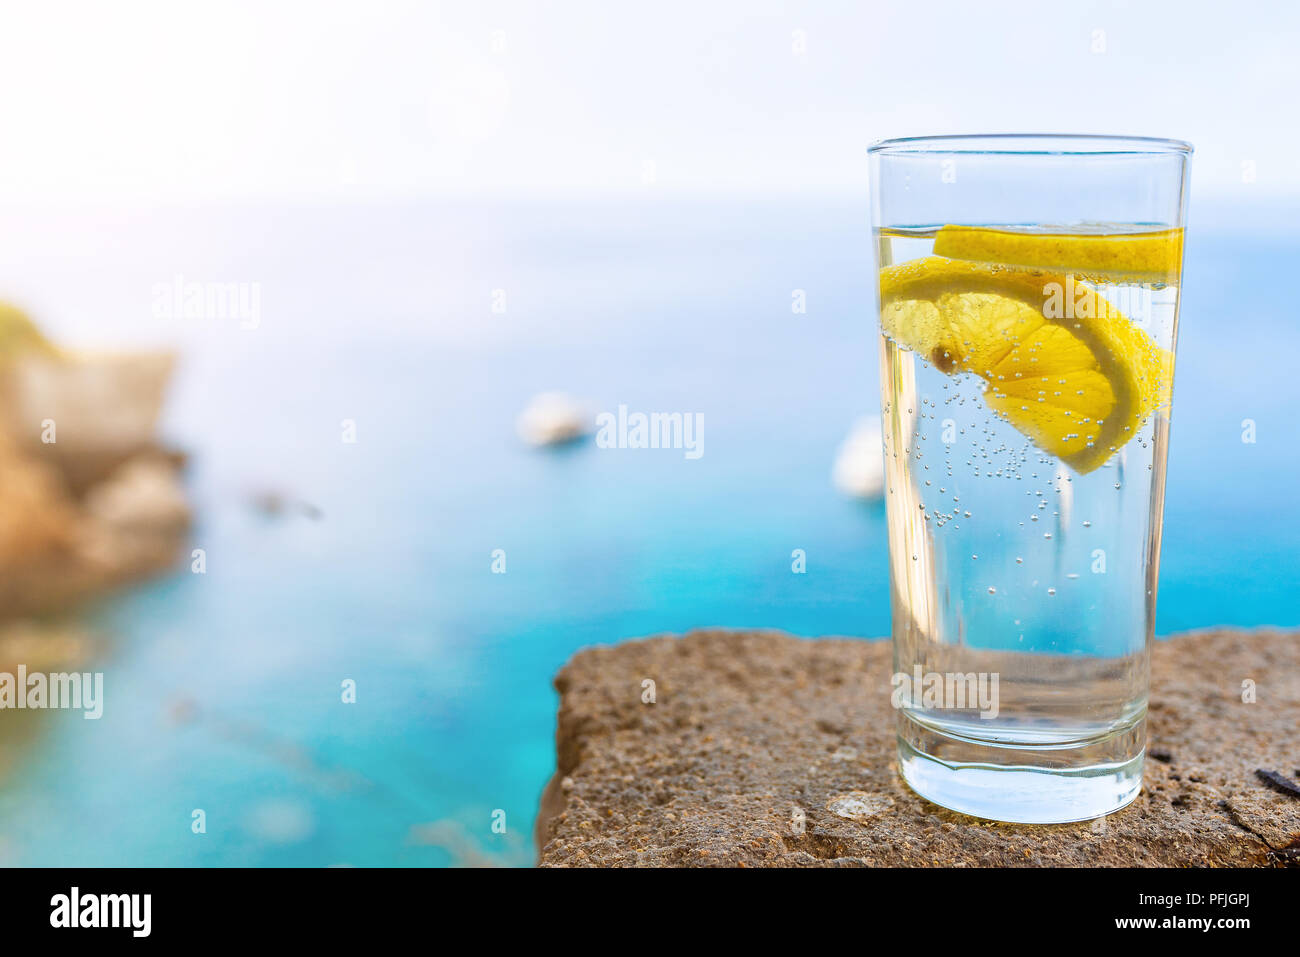 Glas mit kaltem Wasser mit Kohlensäure oder Softdrink und Zitronenscheibe gegen den blauen Himmel und Meer Stockfoto